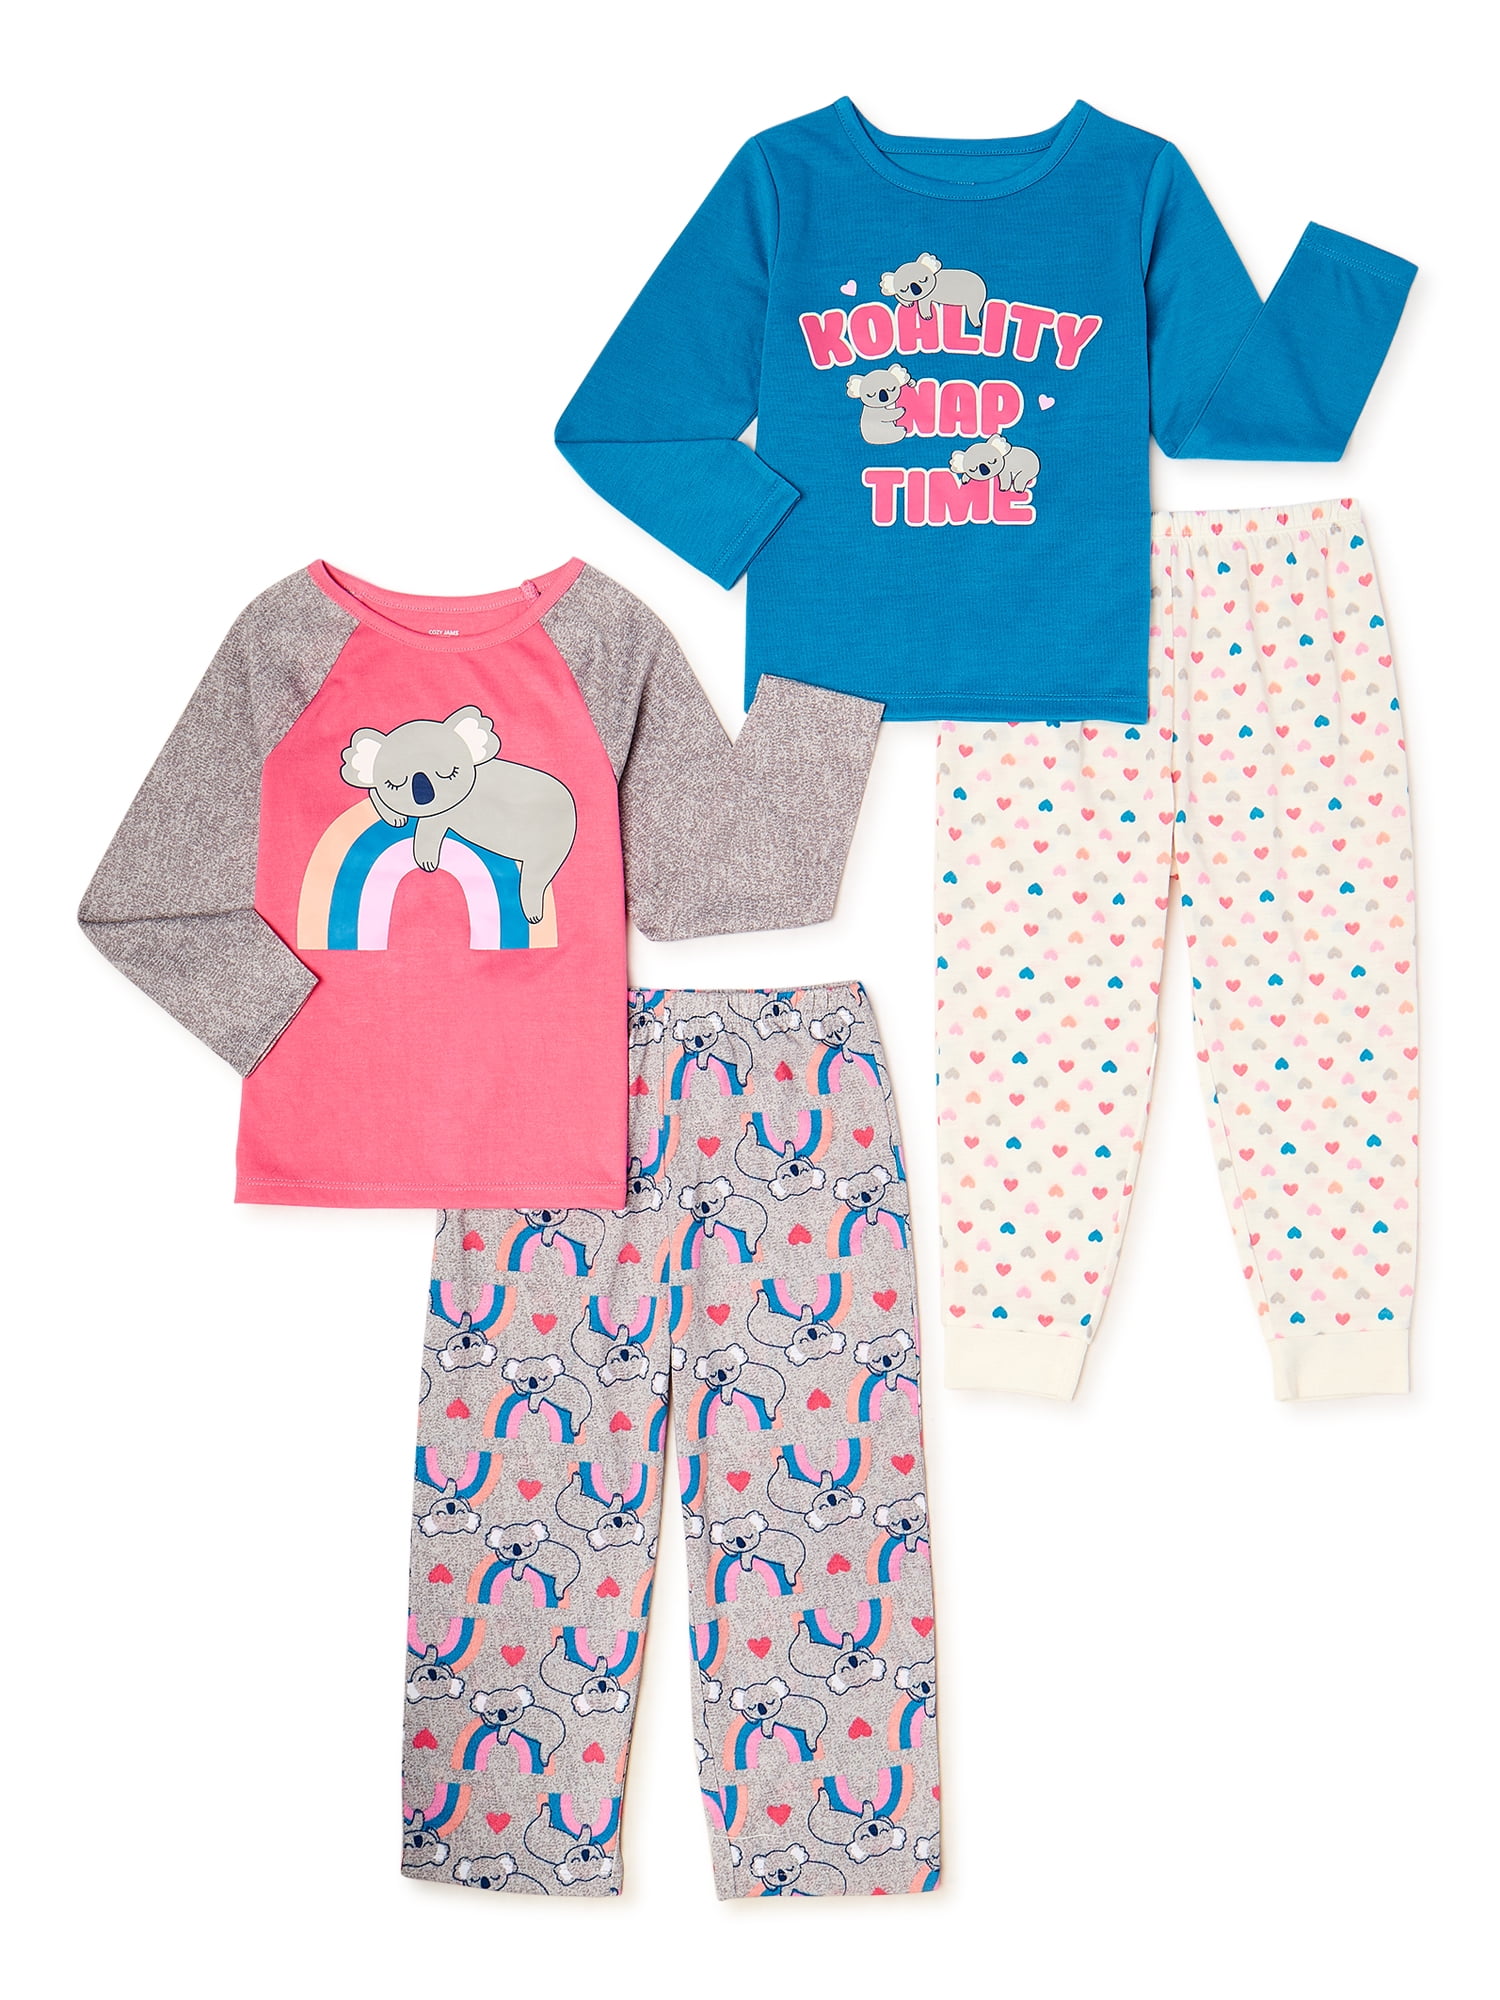 Girls Infant & Toddler 2 Piece Pajama Set 12M-18M-3T 